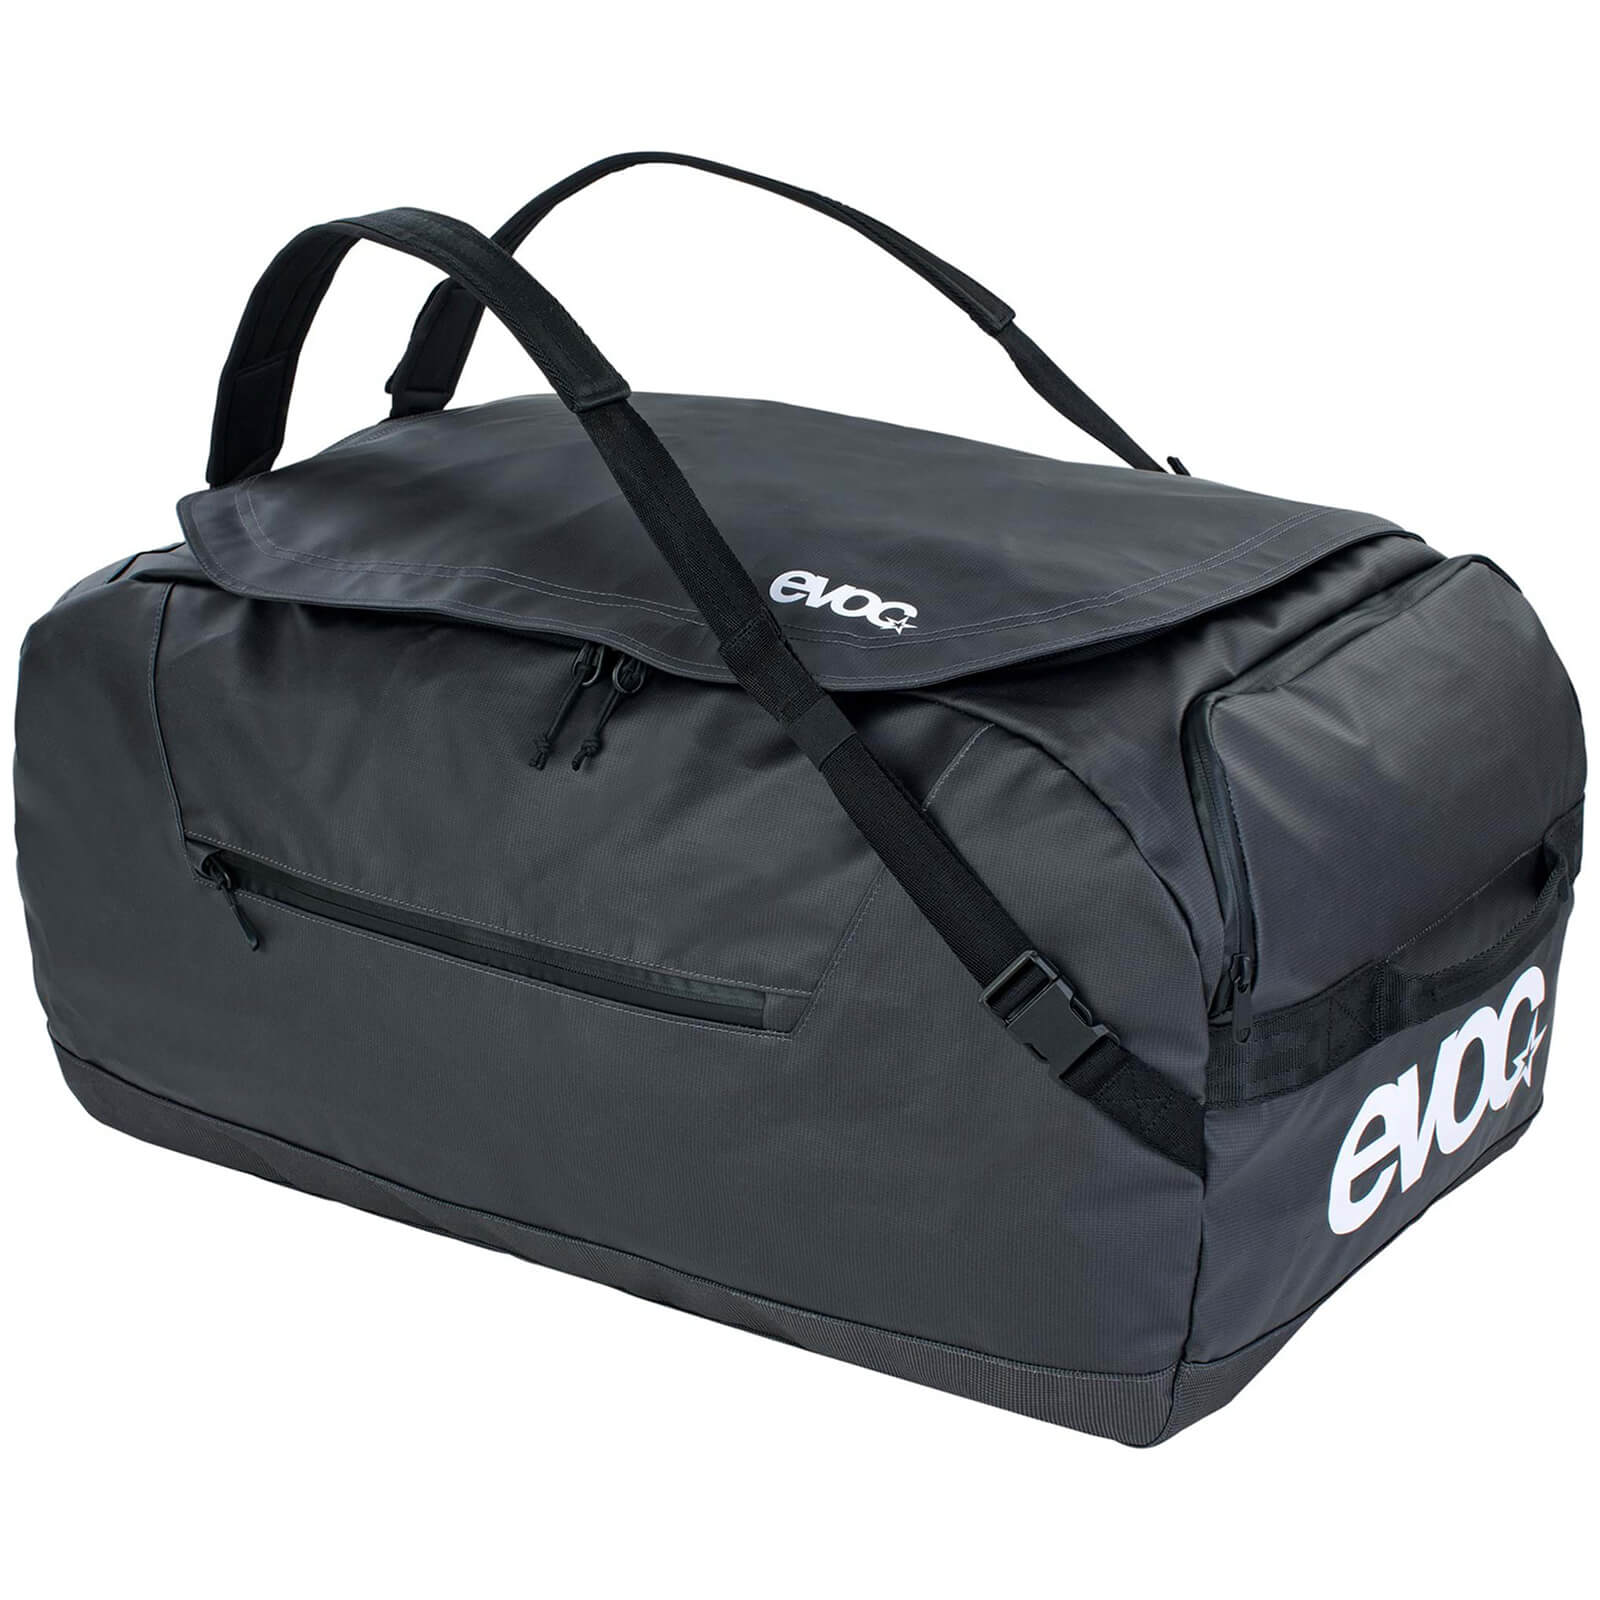 Evoc 60L Duffle Bag - Carbon Grey/Black